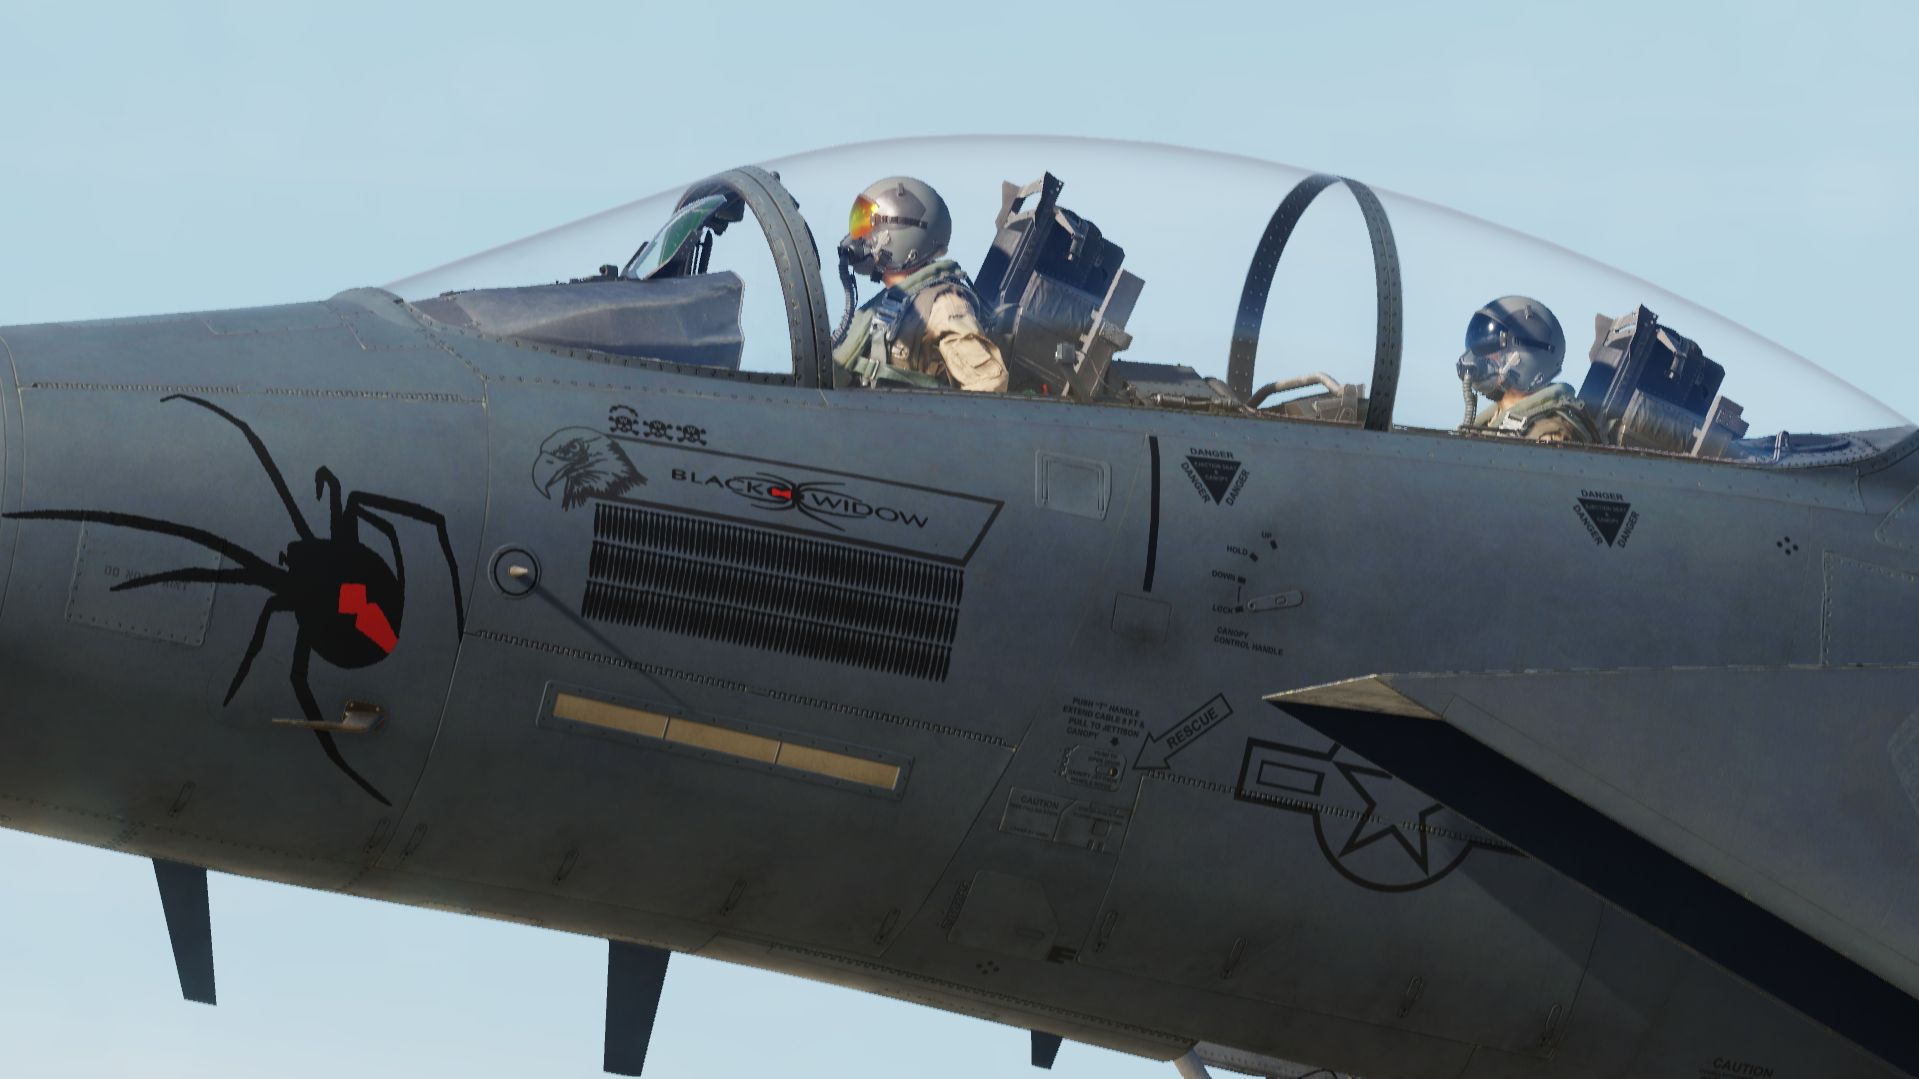 F-15E Strike eagle MO 90-240 "Black Widow"